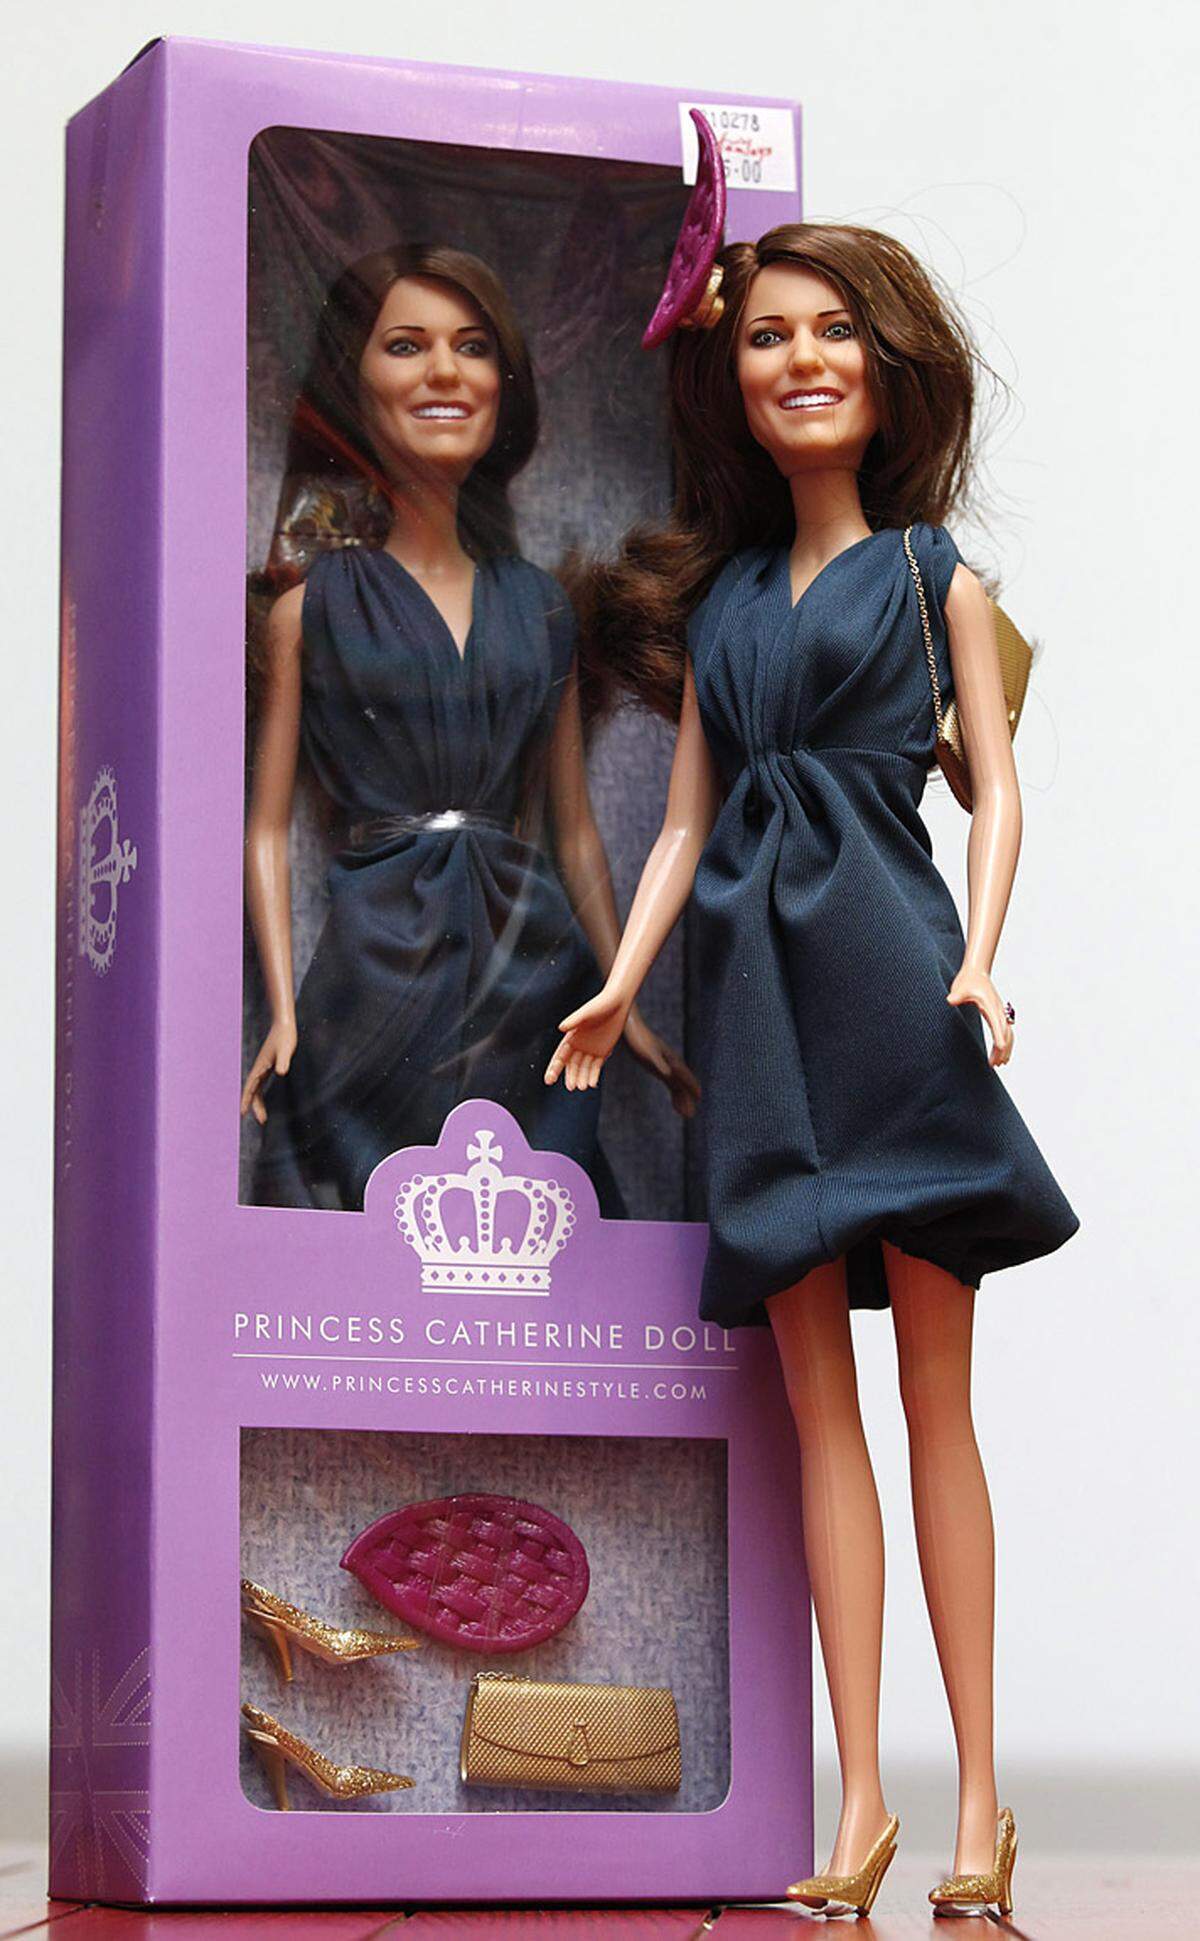 Auch das britische Unternehmen Franklin Mint will einen Teil der Einnahmen aus dem Verkauf der Princess Catherine-Puppe  für einen guten Zweck spenden.  Die Puppe ist natürlich der zukünftigen Prinzessin nachempfunden: Dunkelblaues Kleid, goldene Schuhe und dazupassende Tasche, sowie ein extravaganter Haarschmuck.